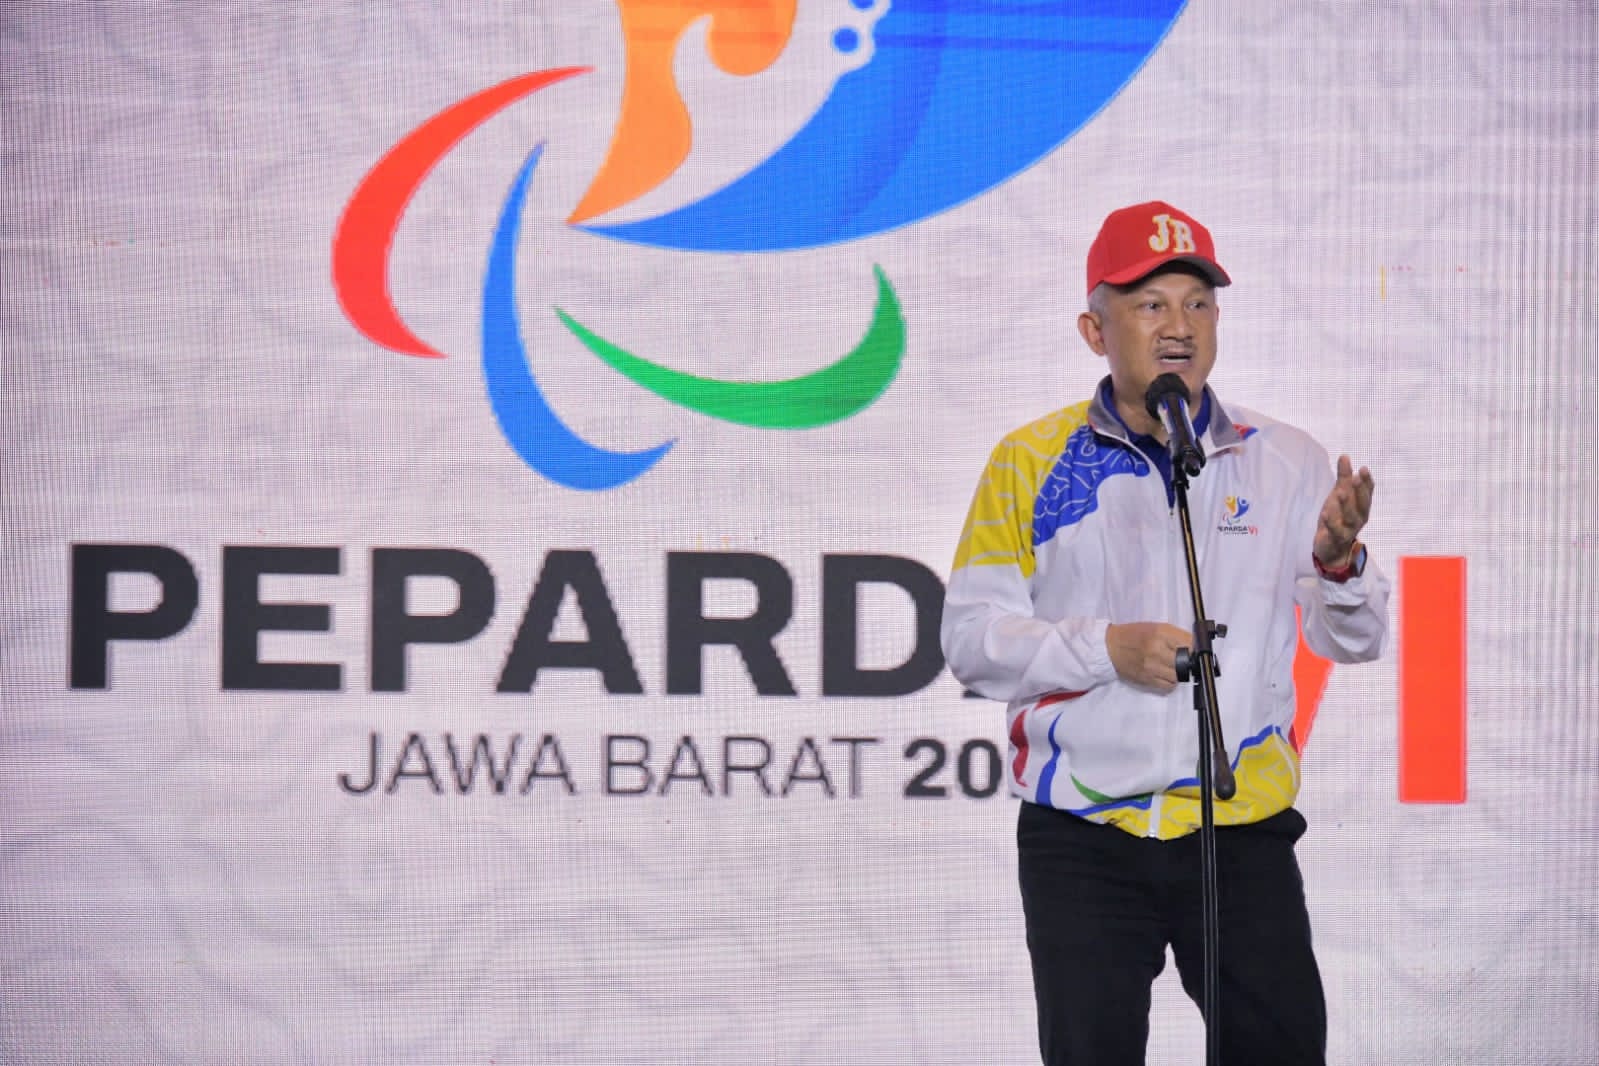 Peparda VI Jabar 2022 di Kabupaten Bekasi, Usung Tagline ‘Makin Berani Juara’ 